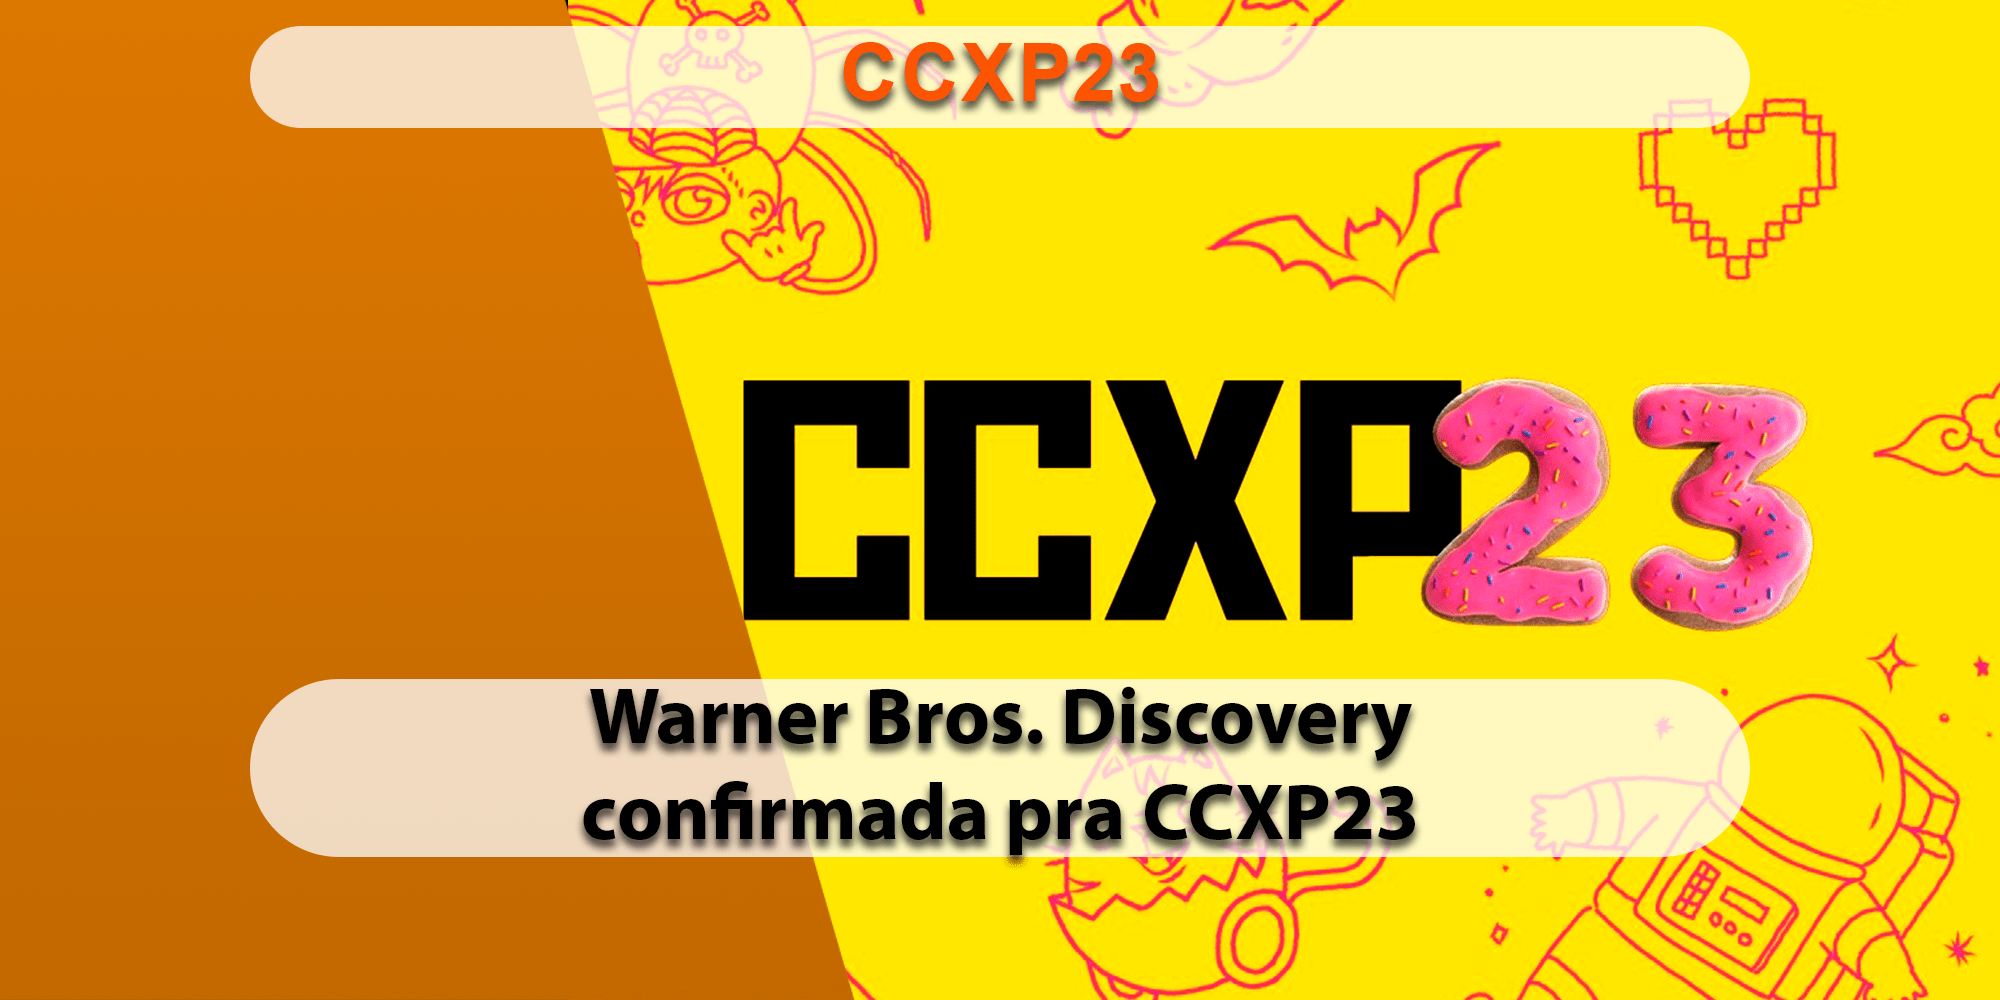 Warner Bros. Discovery confirma participação na CCXP23 com o maior